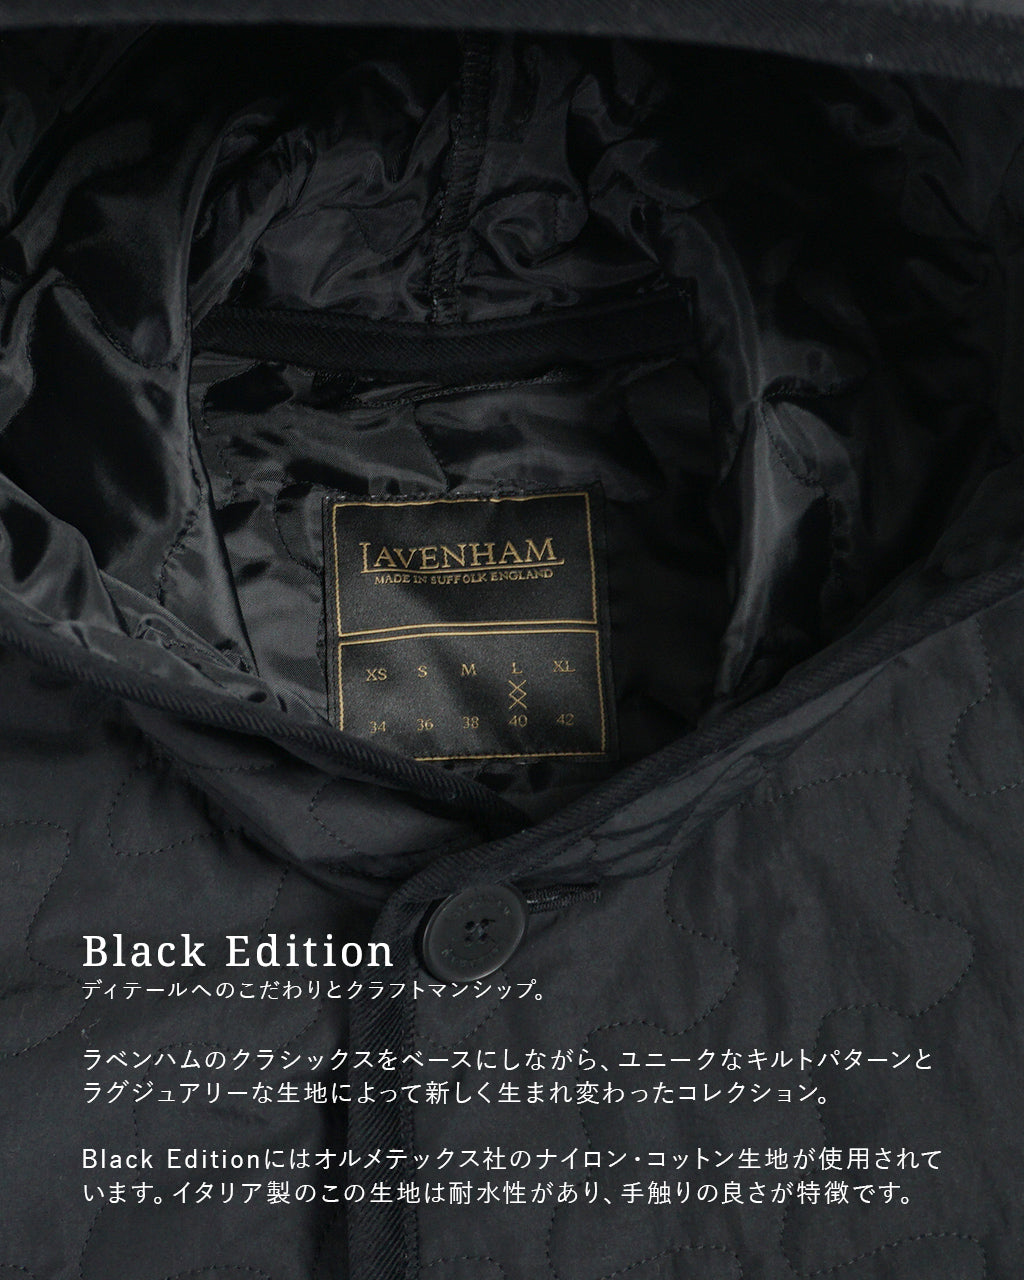 LAVENHAM ラベンハム ブラック エディション ブランドン メンズ BLACK EDITION BRUNDON MENS メンズ  LV7026【送料無料】